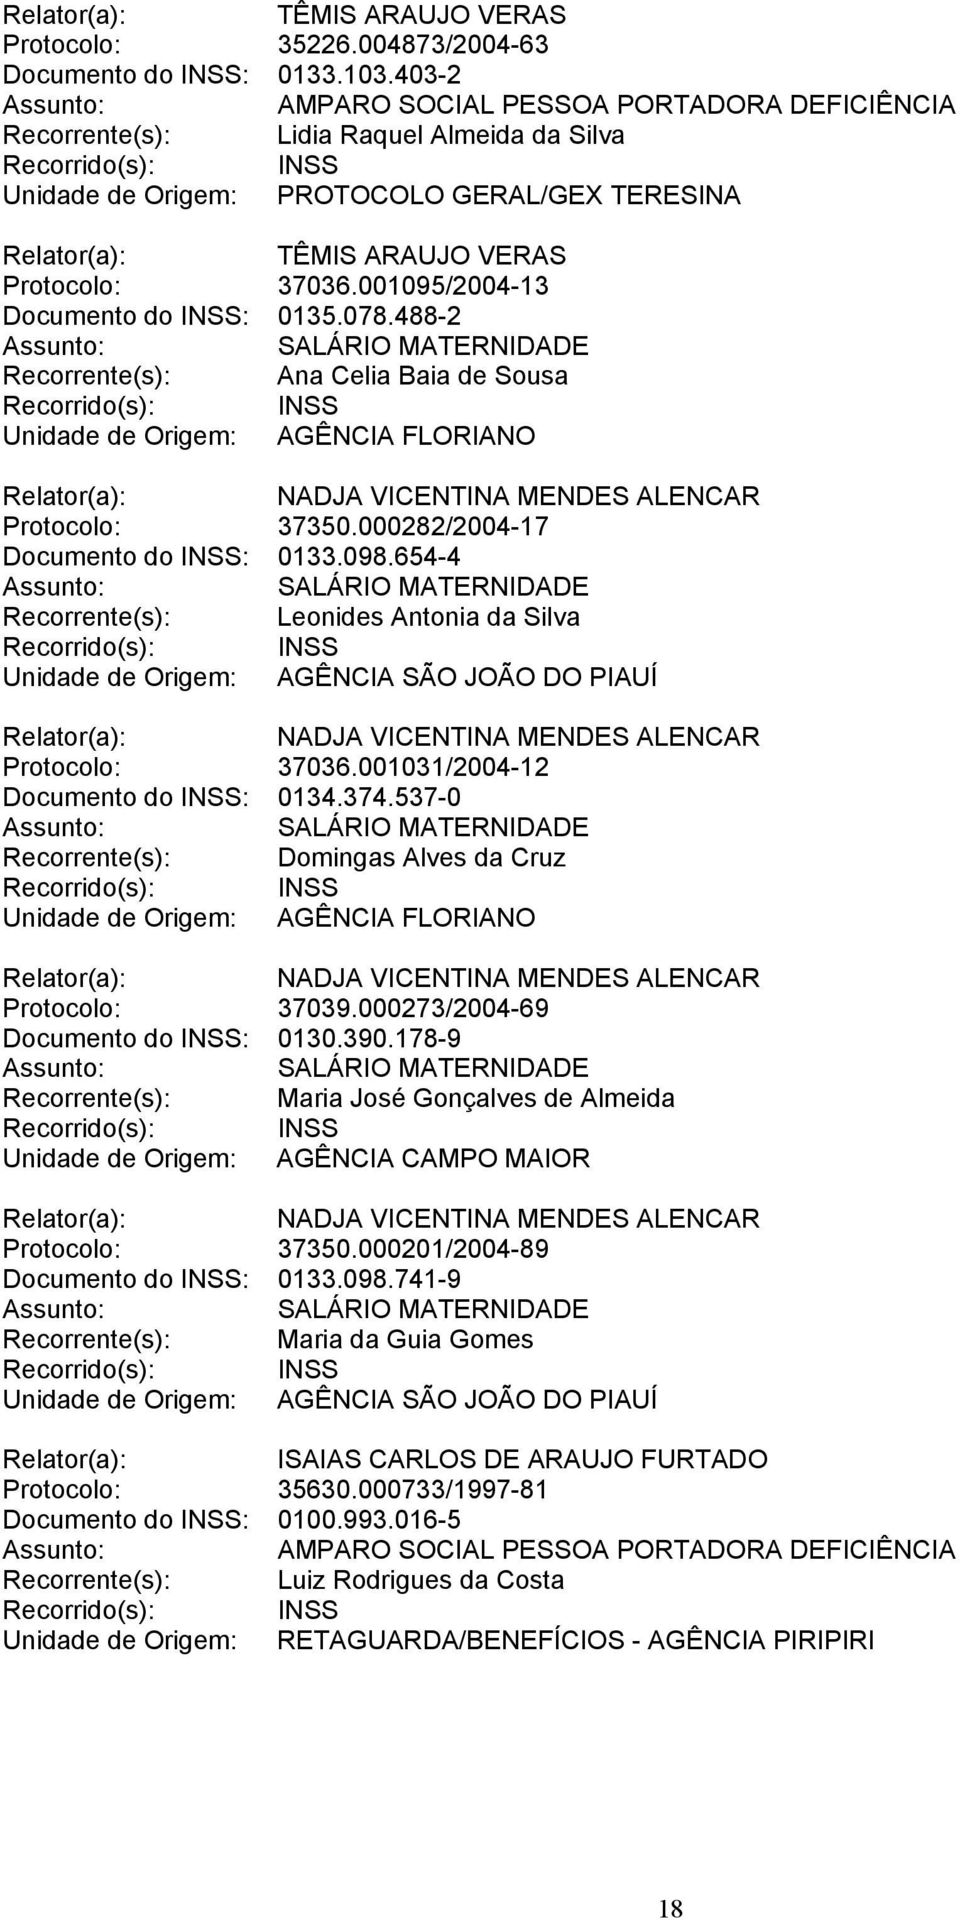 654-4 Recorrente(s): Leonides Antonia da Silva Unidade de Origem: AGÊNCIA SÃO JOÃO DO PIAUÍ Protocolo: 37036.001031/2004-12 Documento do INSS: 0134.374.